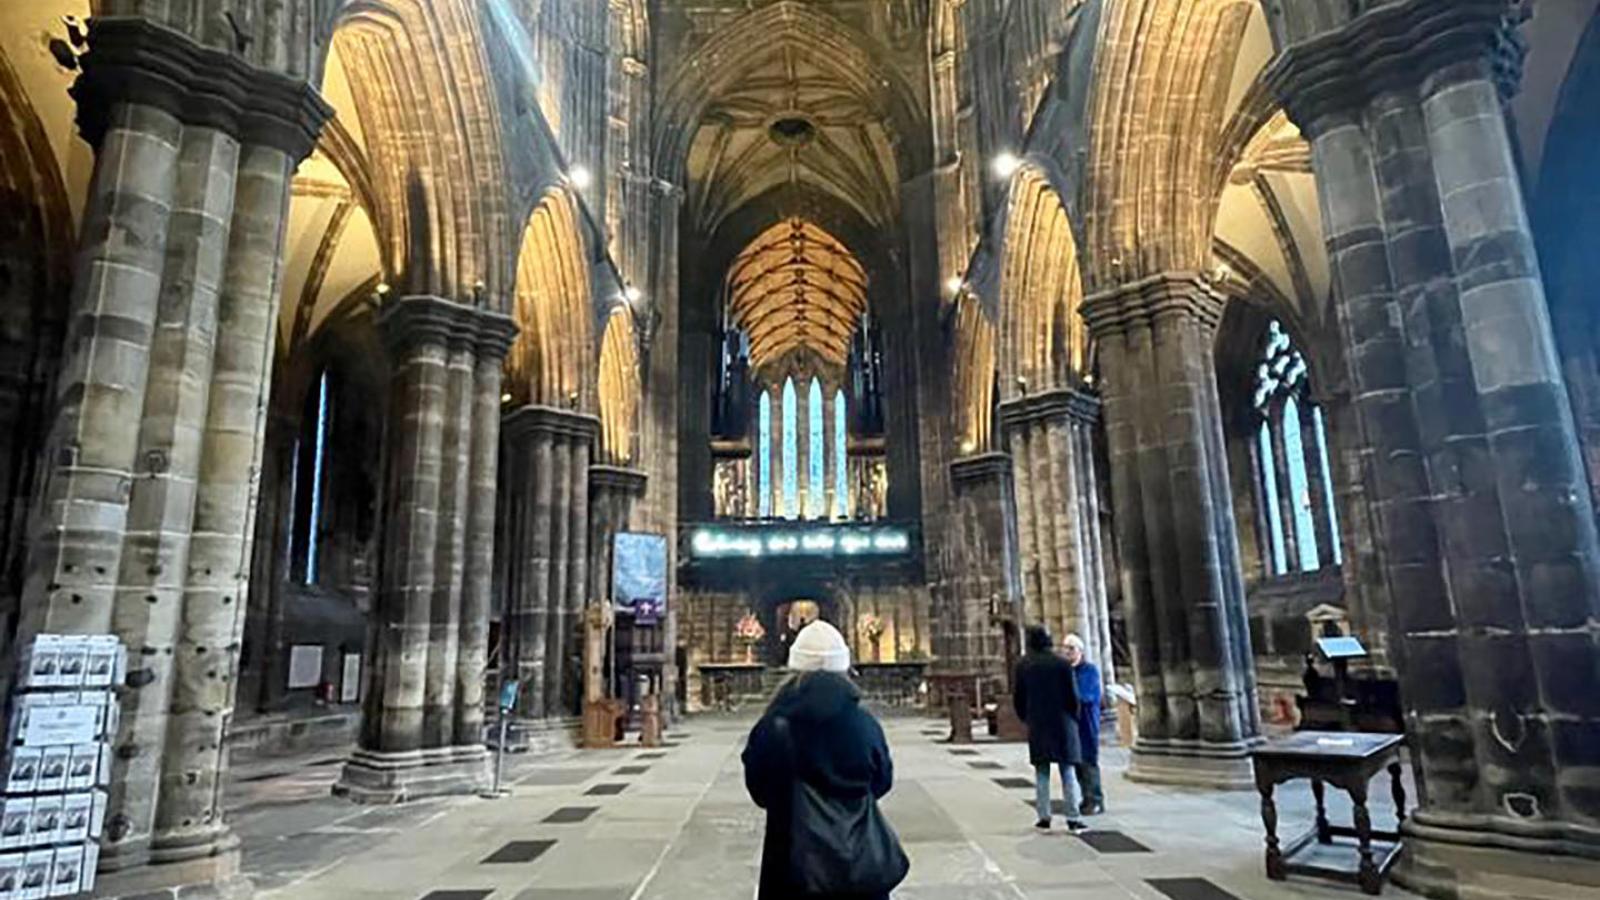 Ein Blick von innen in die Glasgower Kathedrale St. Mungo's Catherdral. Eine Person steht mittig mit dem Rcken zur Kamera. Der Raum ist Dunkel aber die Torbogen sind von unten beleuchtet.